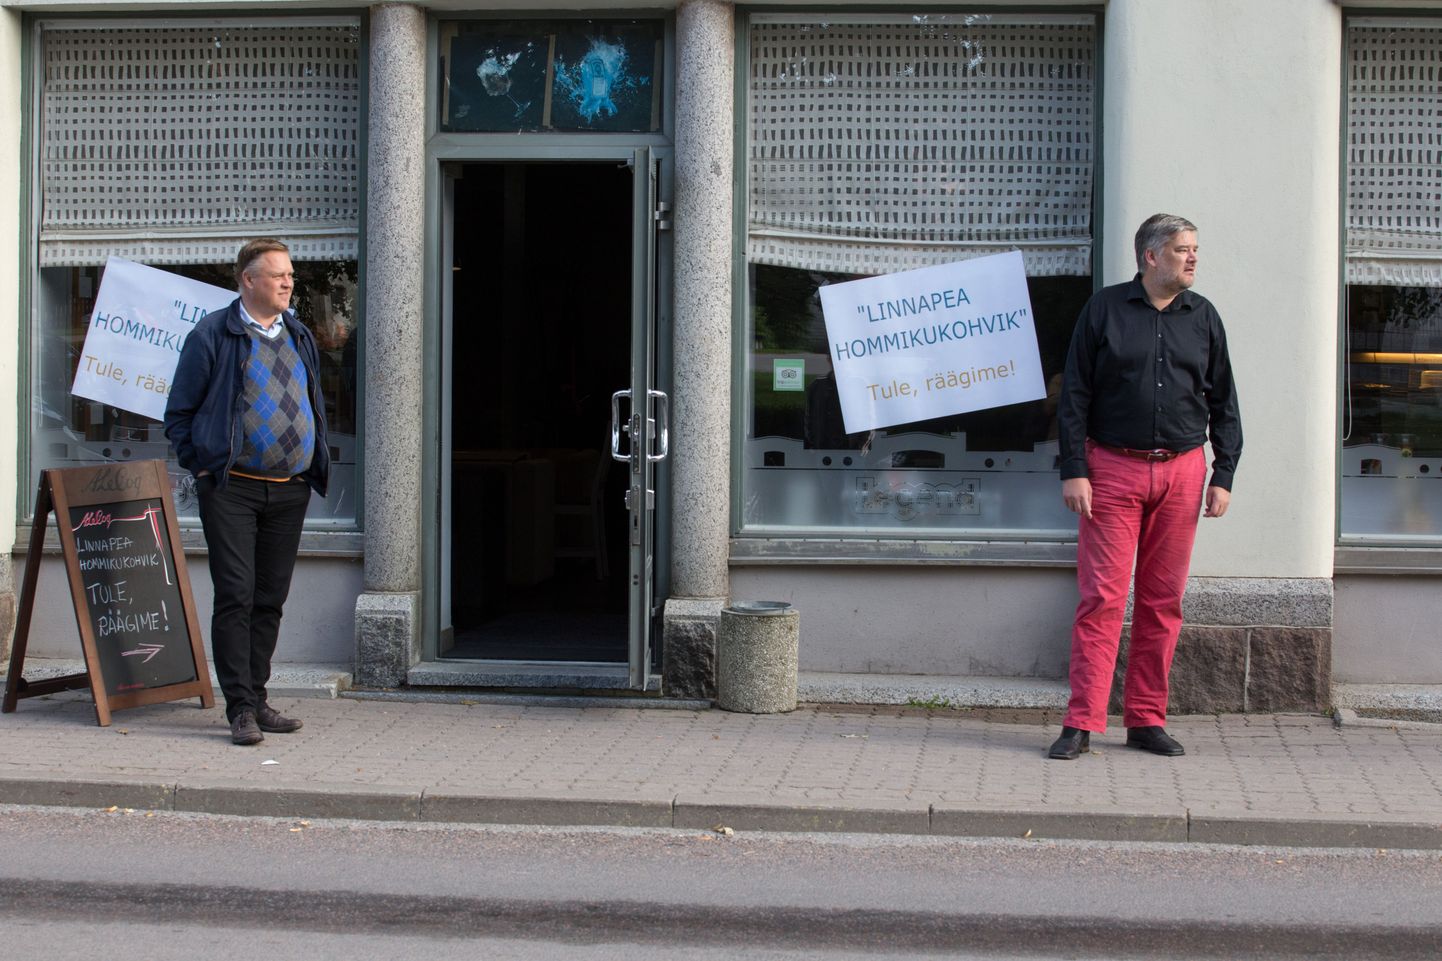 "Astuge sisse, räägime!" Nii kutsus linnapeakandidaat Harri Juhani Aaltonen viljandlasi kolmapäeva hommikul Legendi kohvikusse.